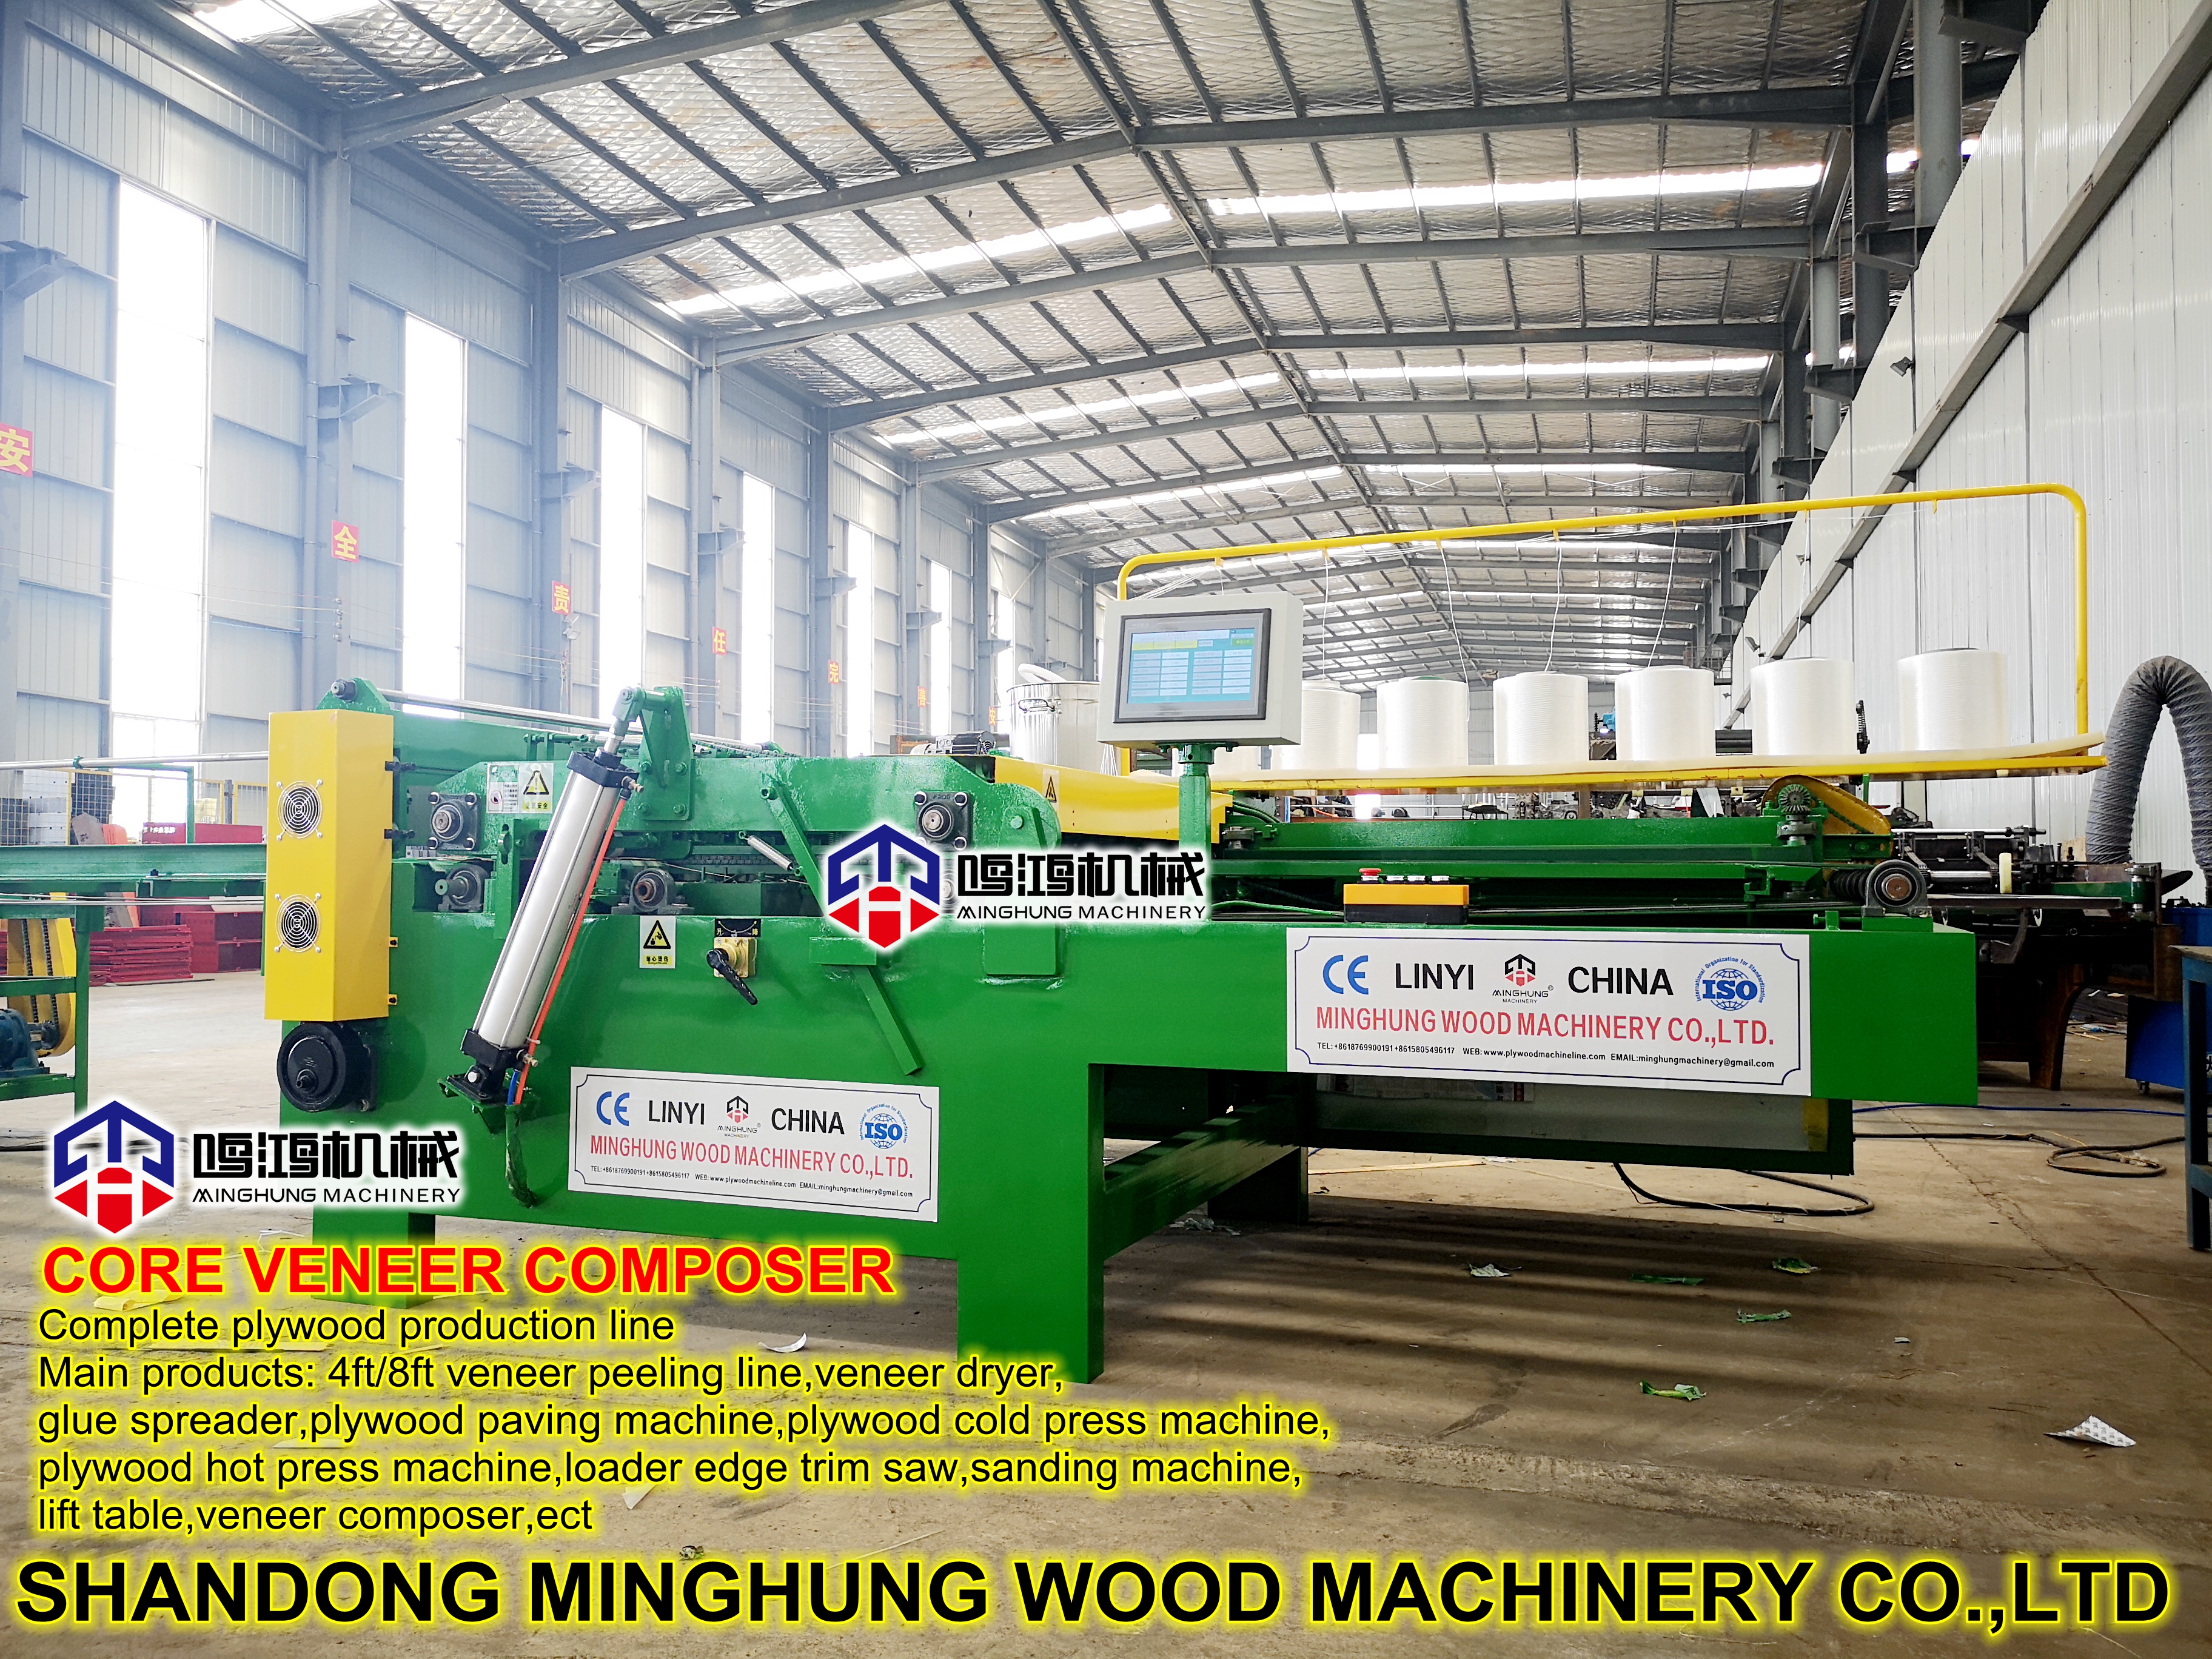 CNC-Kernfurnierspleißmaschine für die Sperrholzherstellung